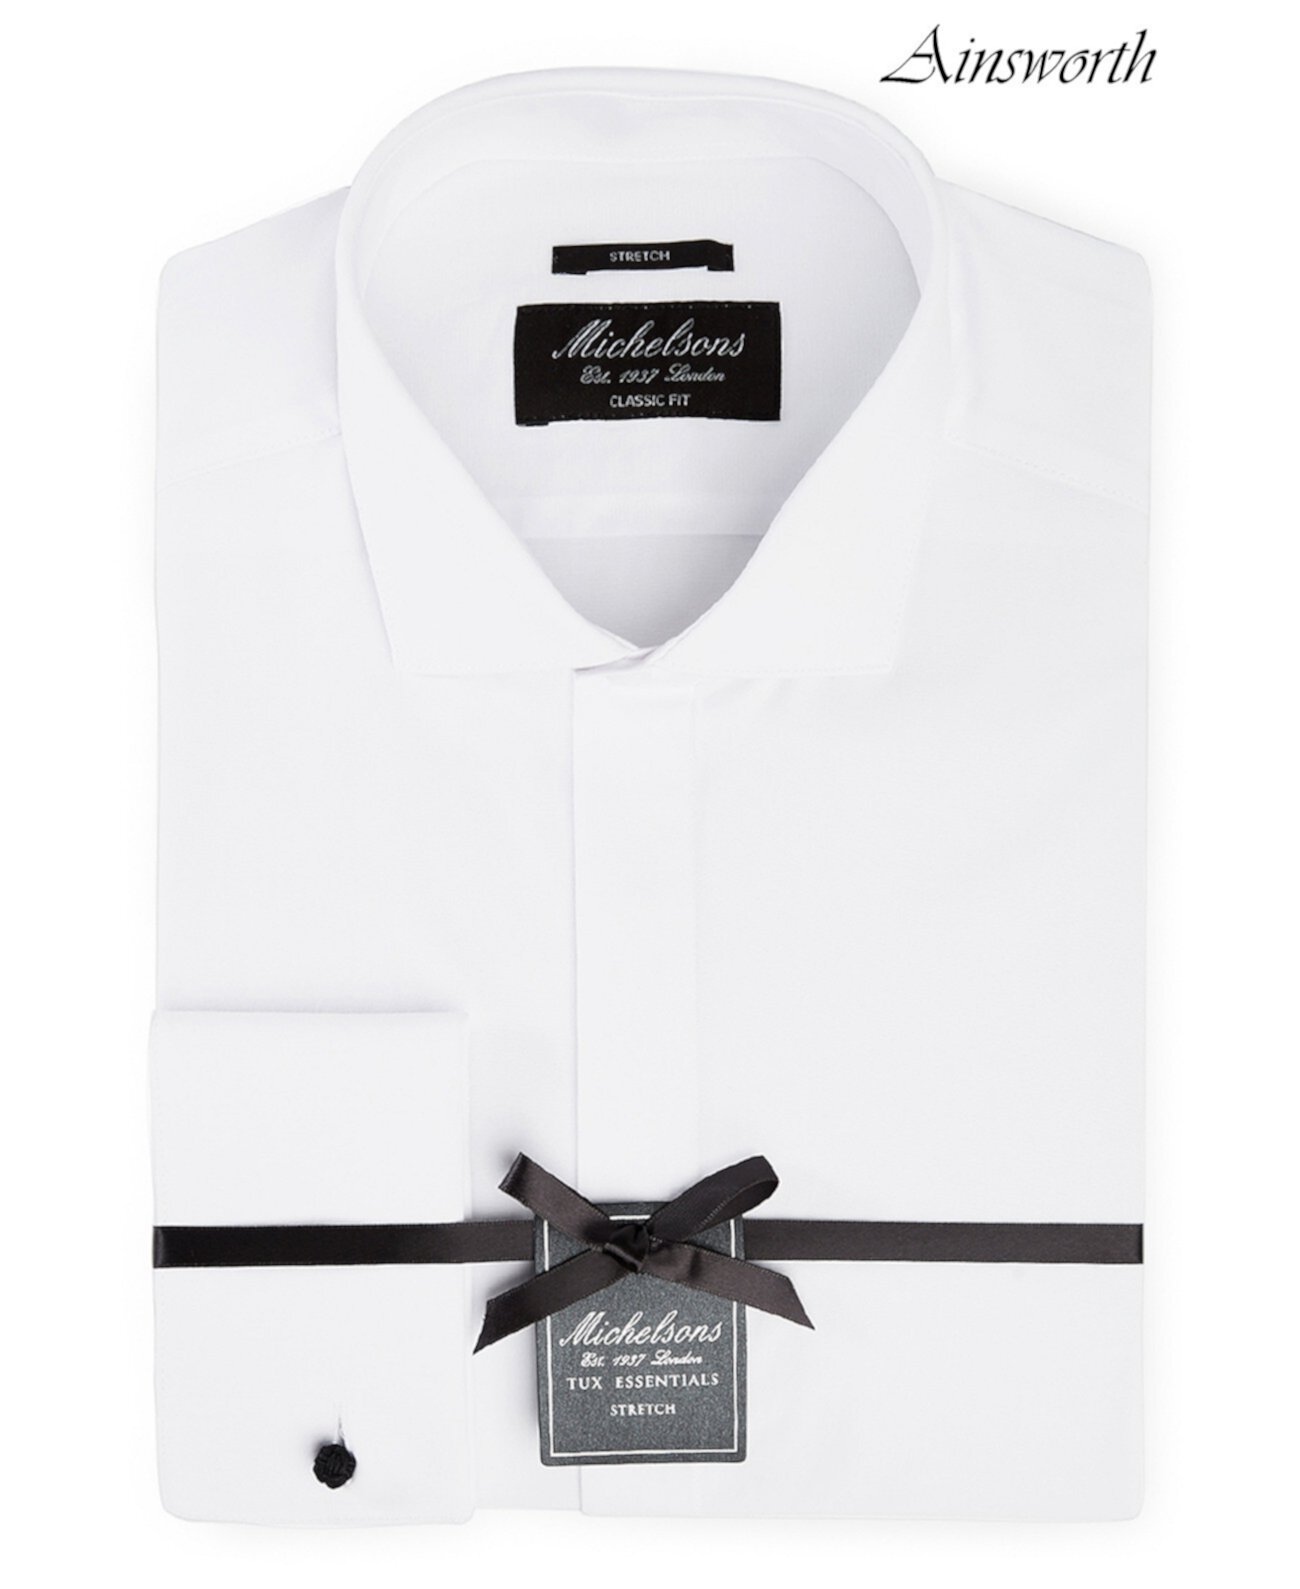 of London Мужская классическая / эластичная рубашка-смокинг из плотной французской манжеты MICHELSONS OF LONDON